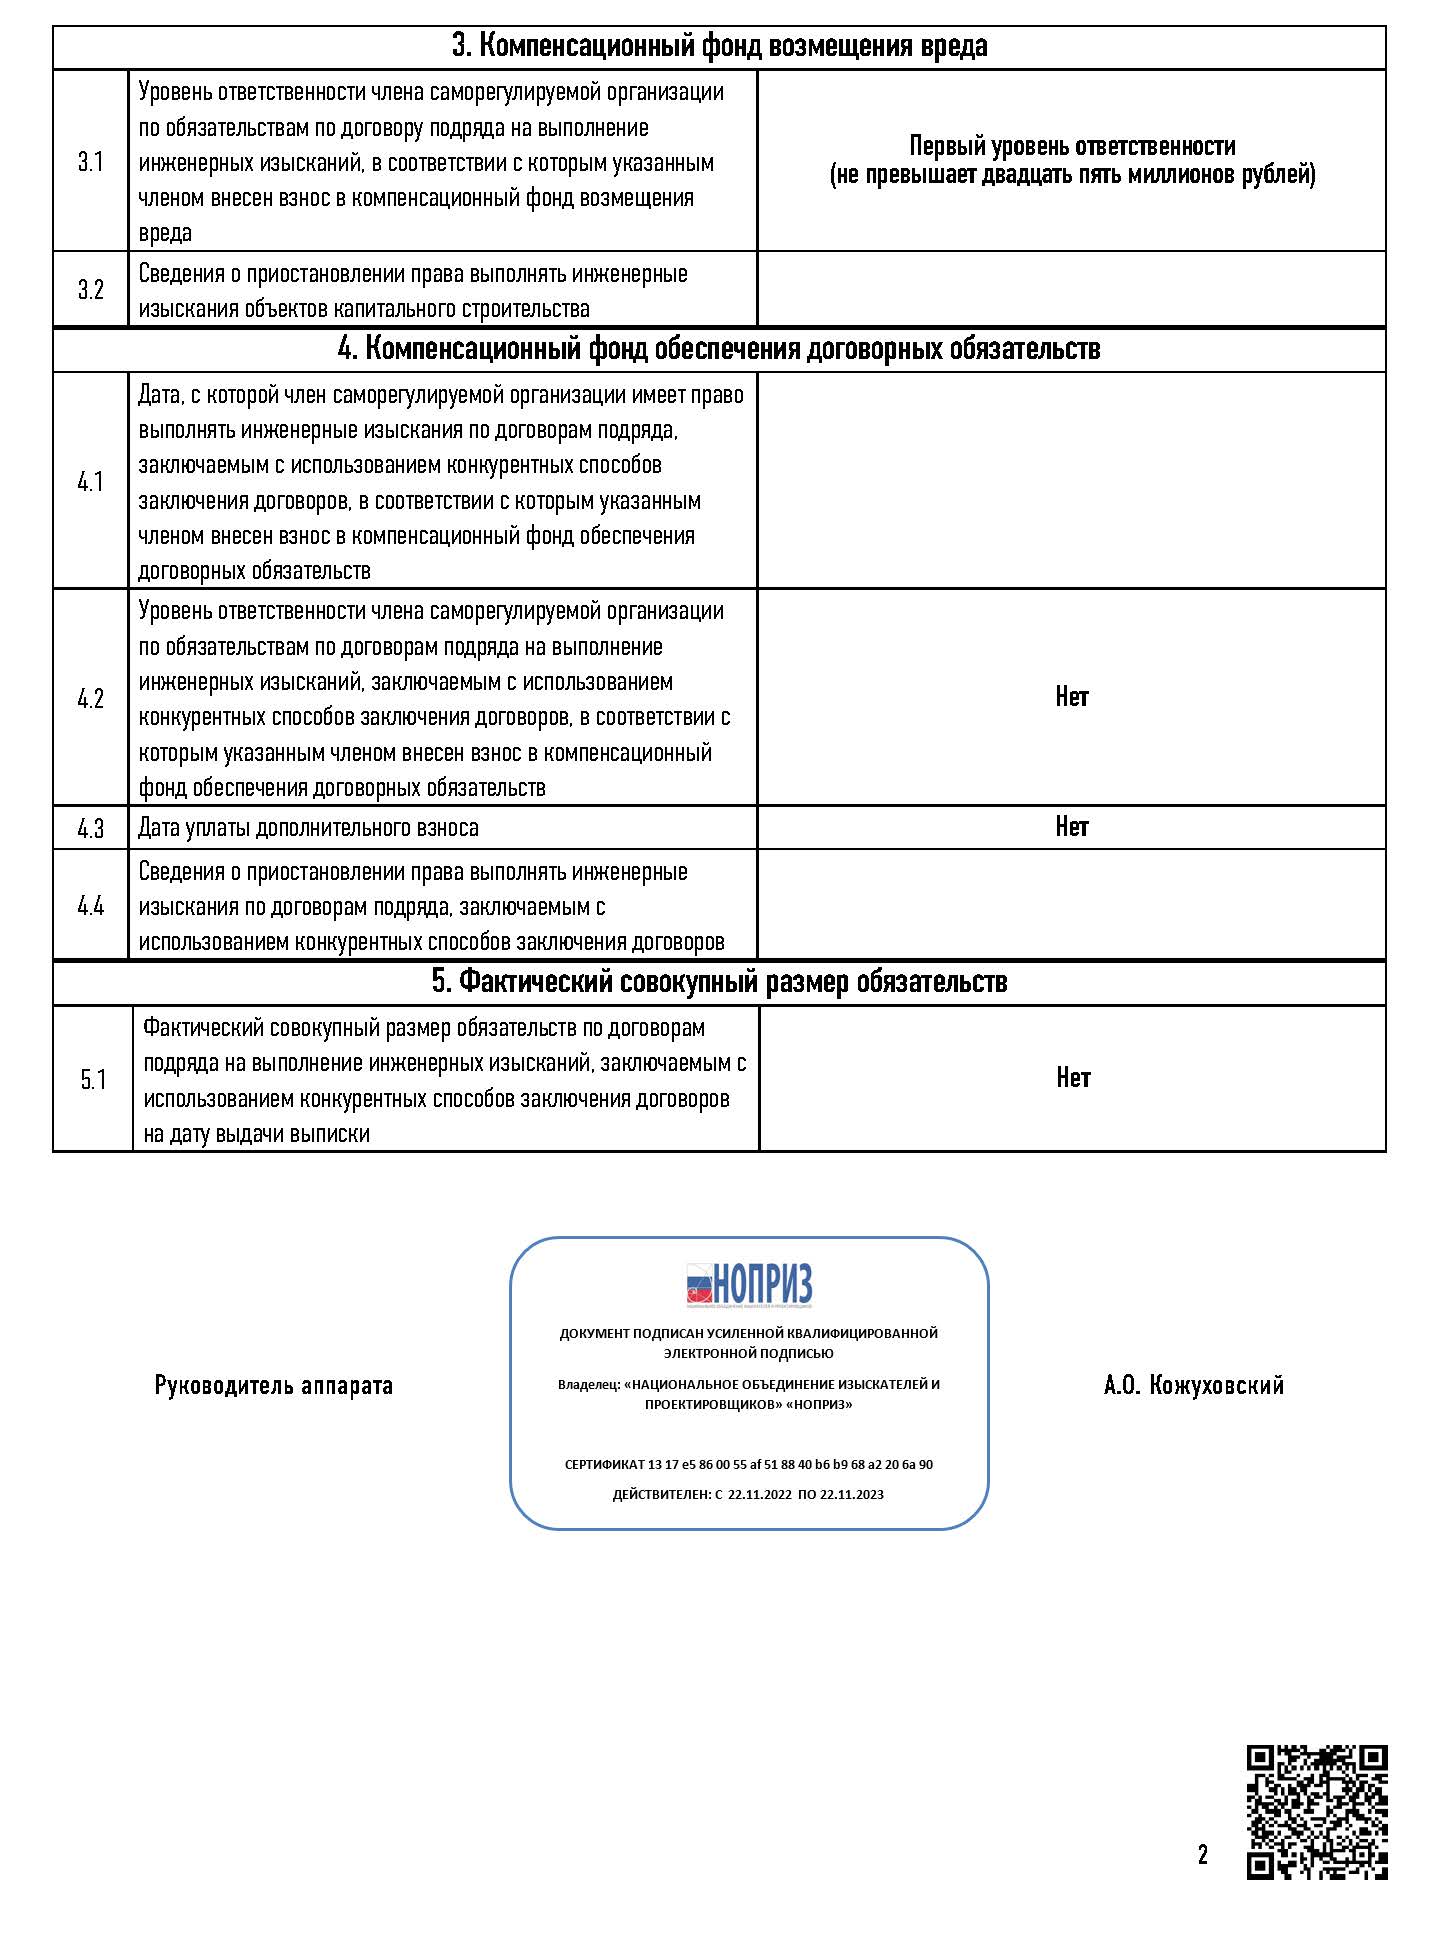 Единый реестр сведений о членах СРО и их обязательствах (НОПРИЗ)